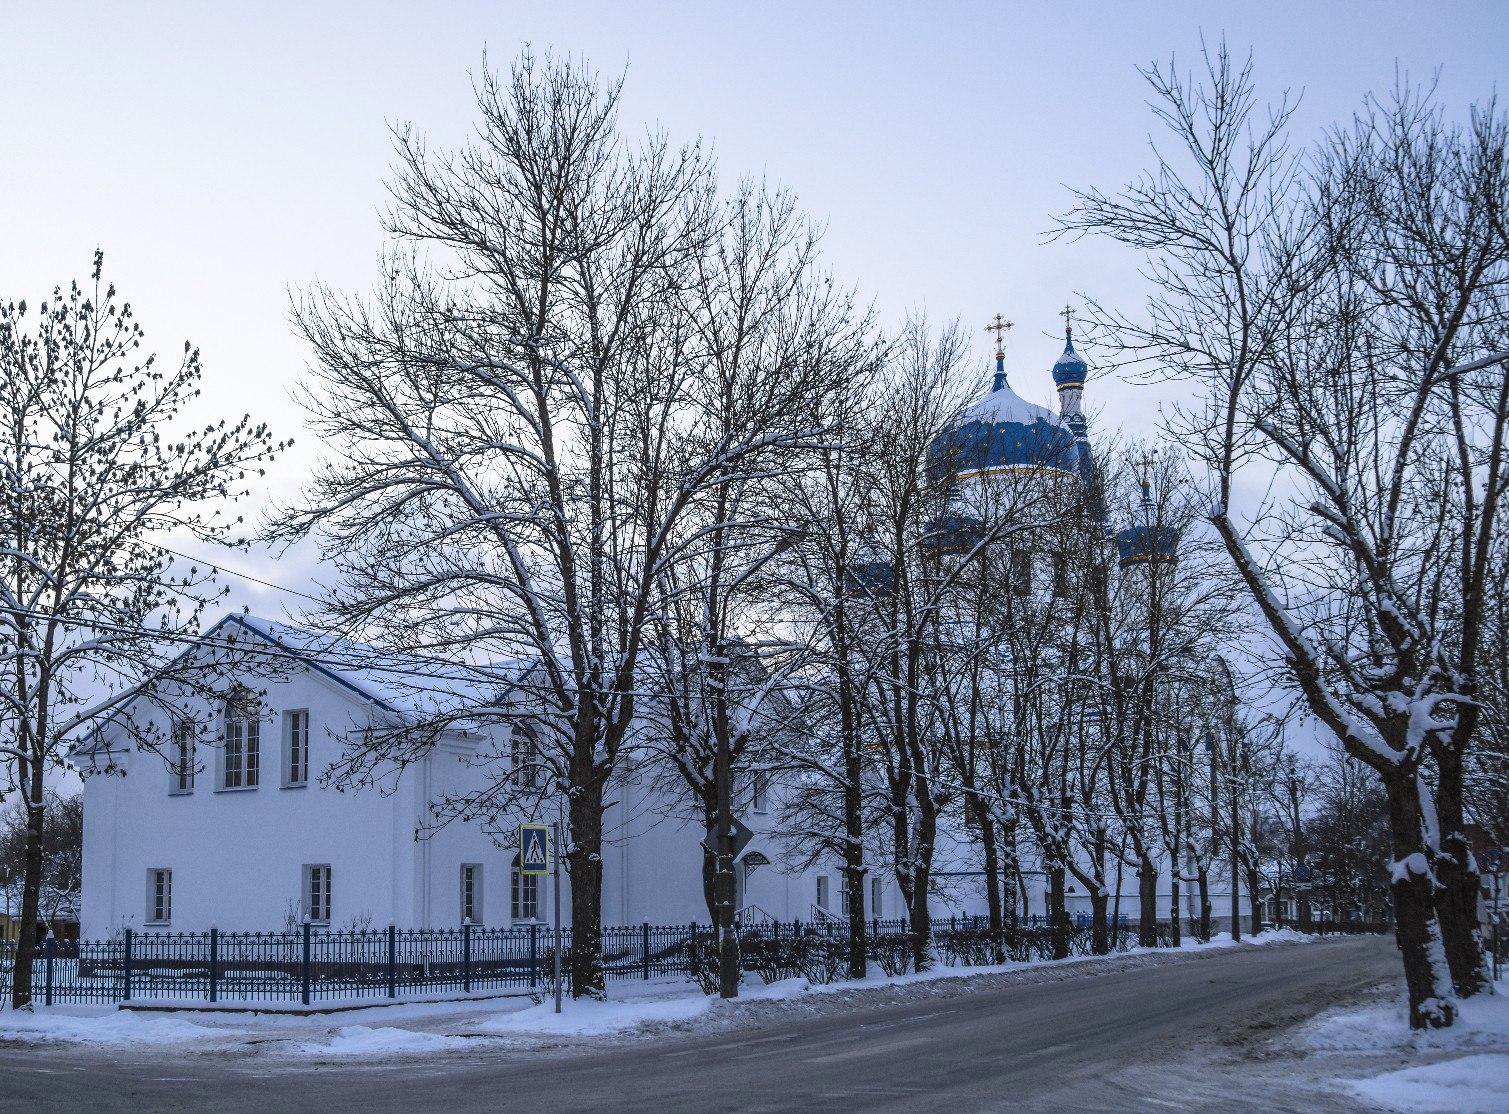 Двухэтажное здание духовно-просветительского центра Покровского собора.
Фото Геннадия Богданова. 2018